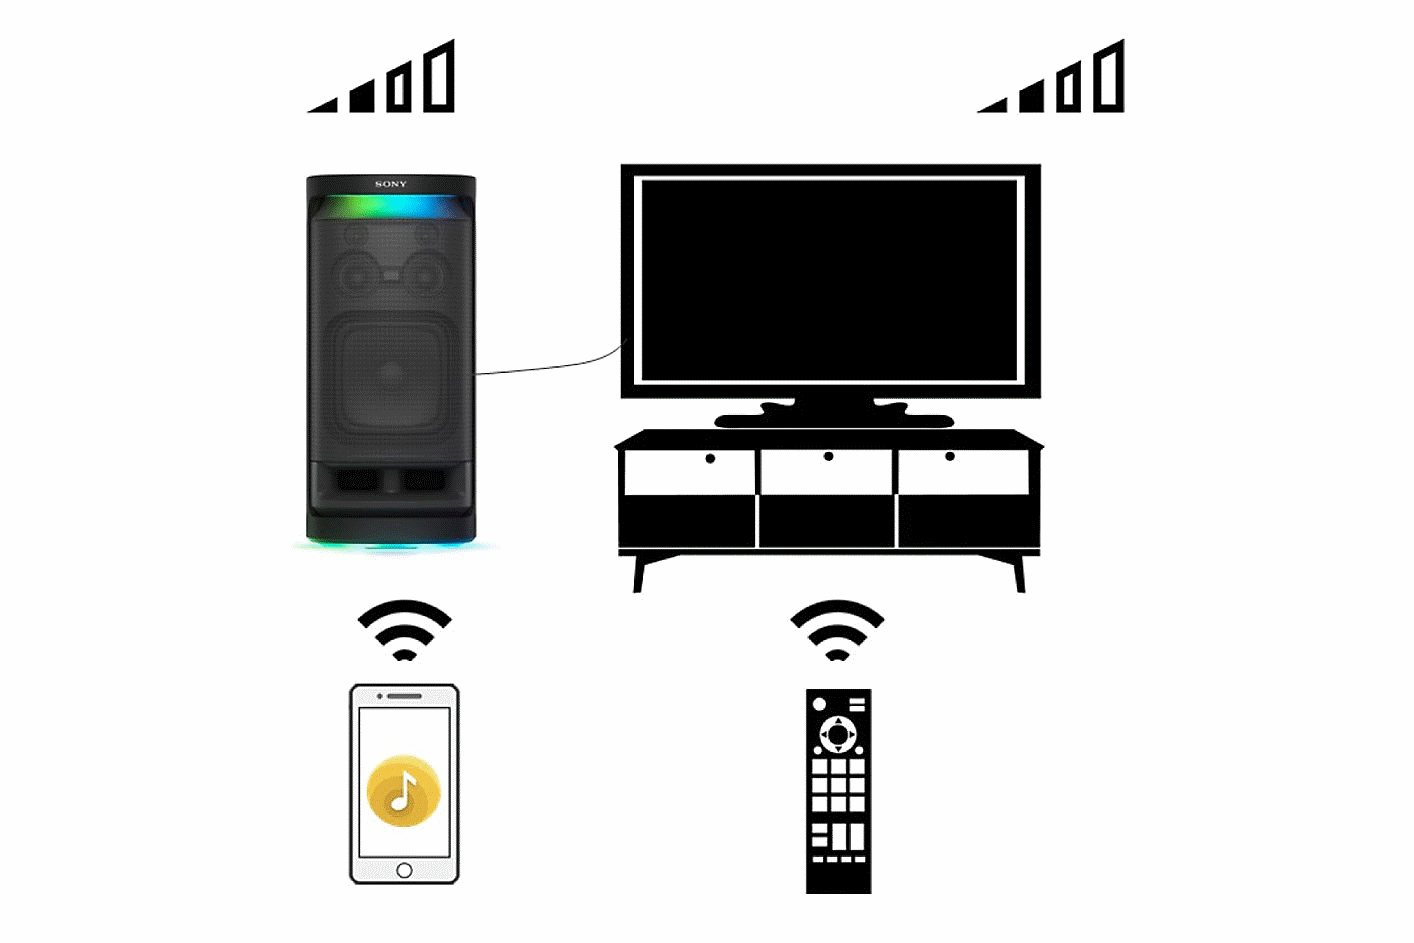 Imagen que muestra las instrucciones para activar el sonido entre el parlante inalámbrico SRS-XV900 y el televisor